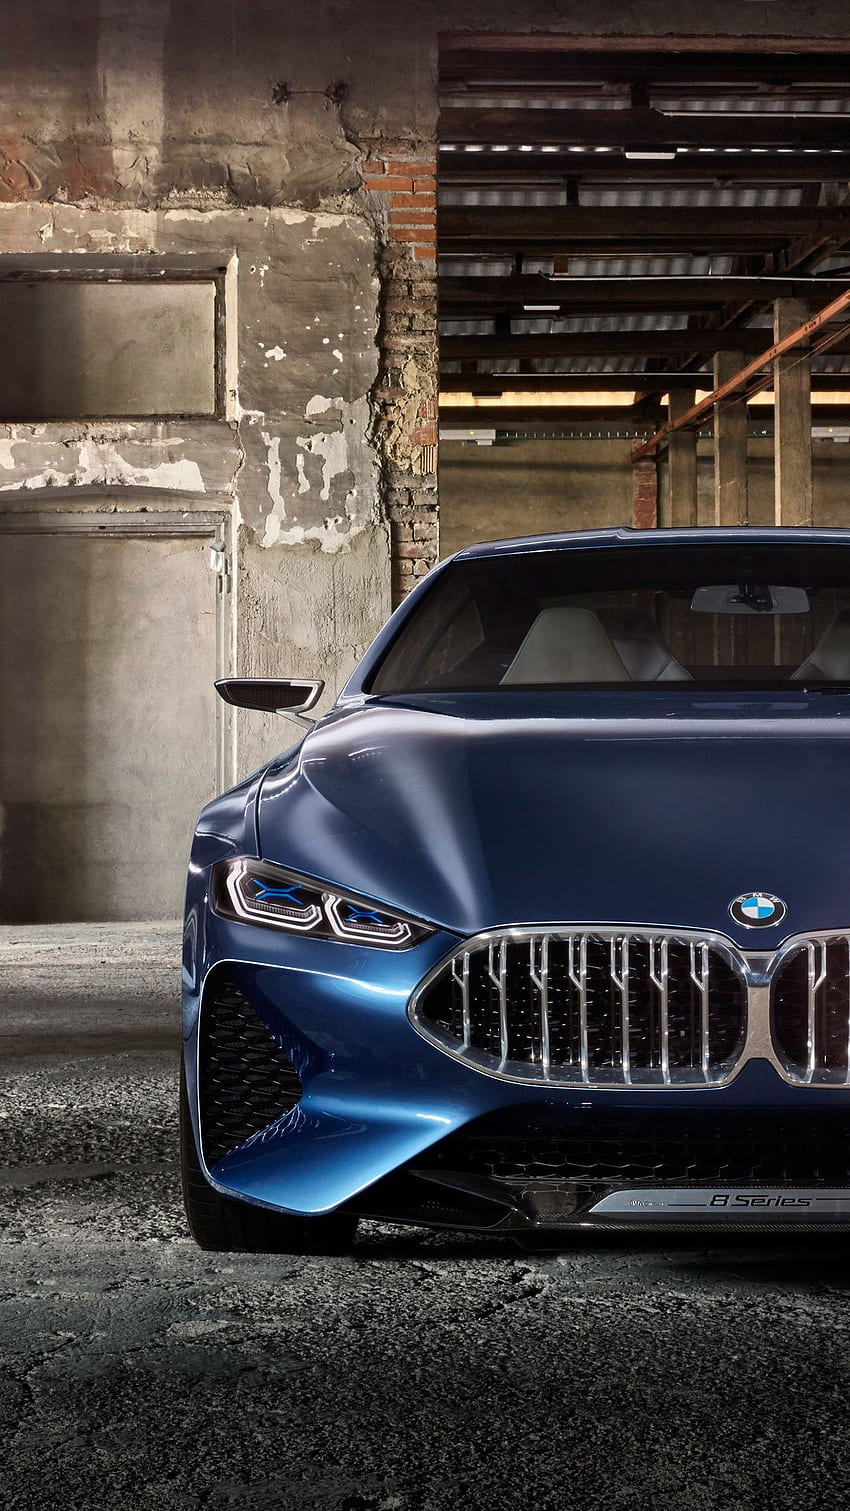 BMW Car: BMW Car luôn là sự lựa chọn hàng đầu của những người yêu thích sự sang trọng, hiện đại và đặc biệt là vận hành hoàn hảo trên mọi địa hình.